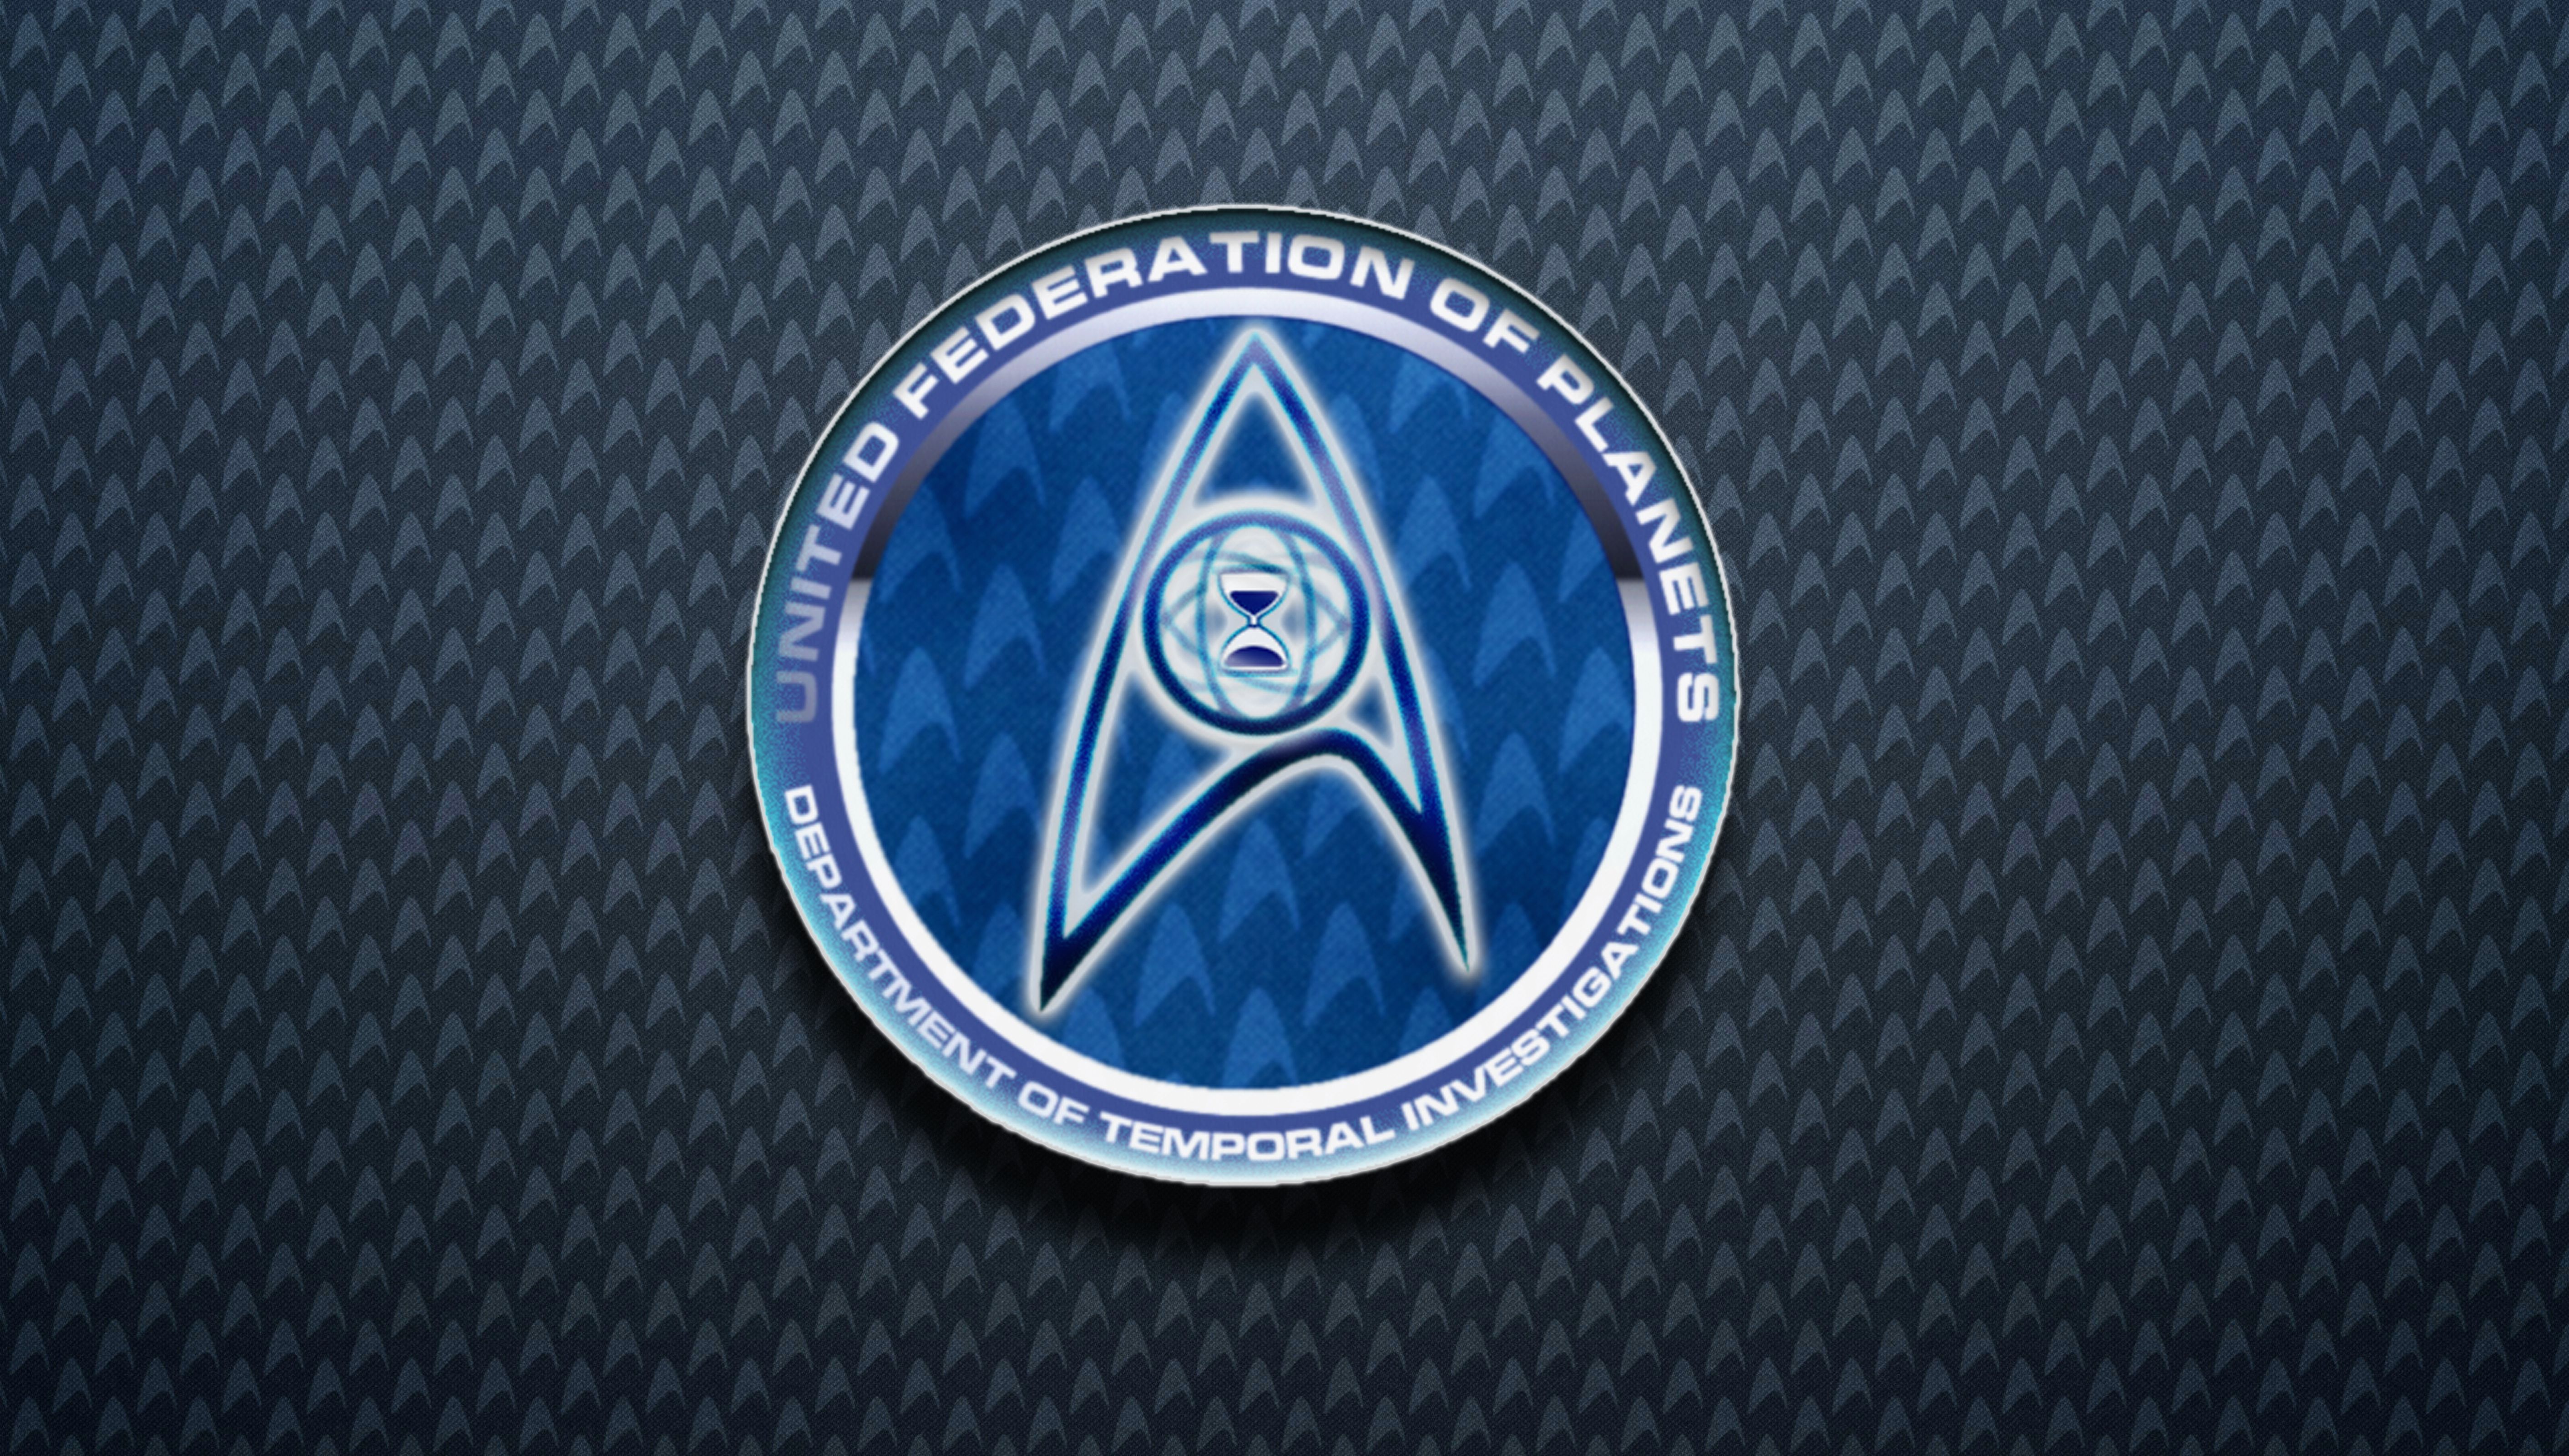 Star Trek DTI Logo Wallpaper by DJBStudios on DeviantArt